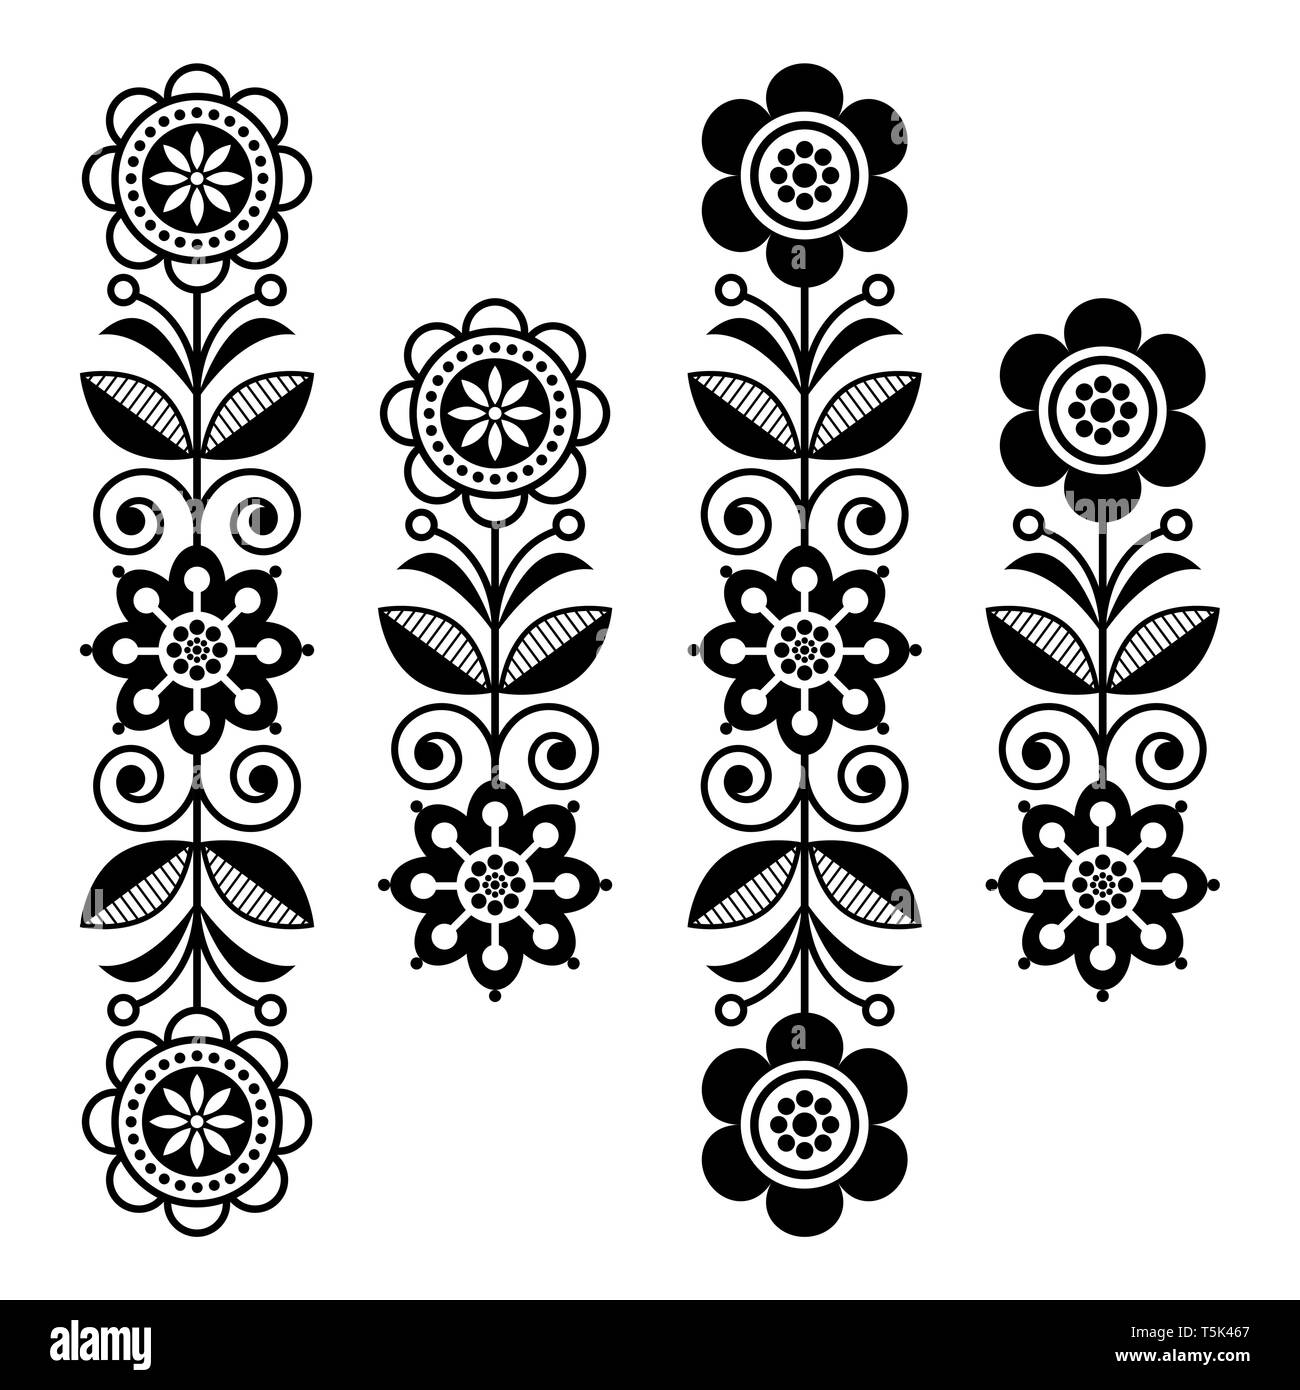 Skandinavische floral Design Elemente, Volkskunst Muster - lange Streifen in Schwarz und Weiß Stock Vektor